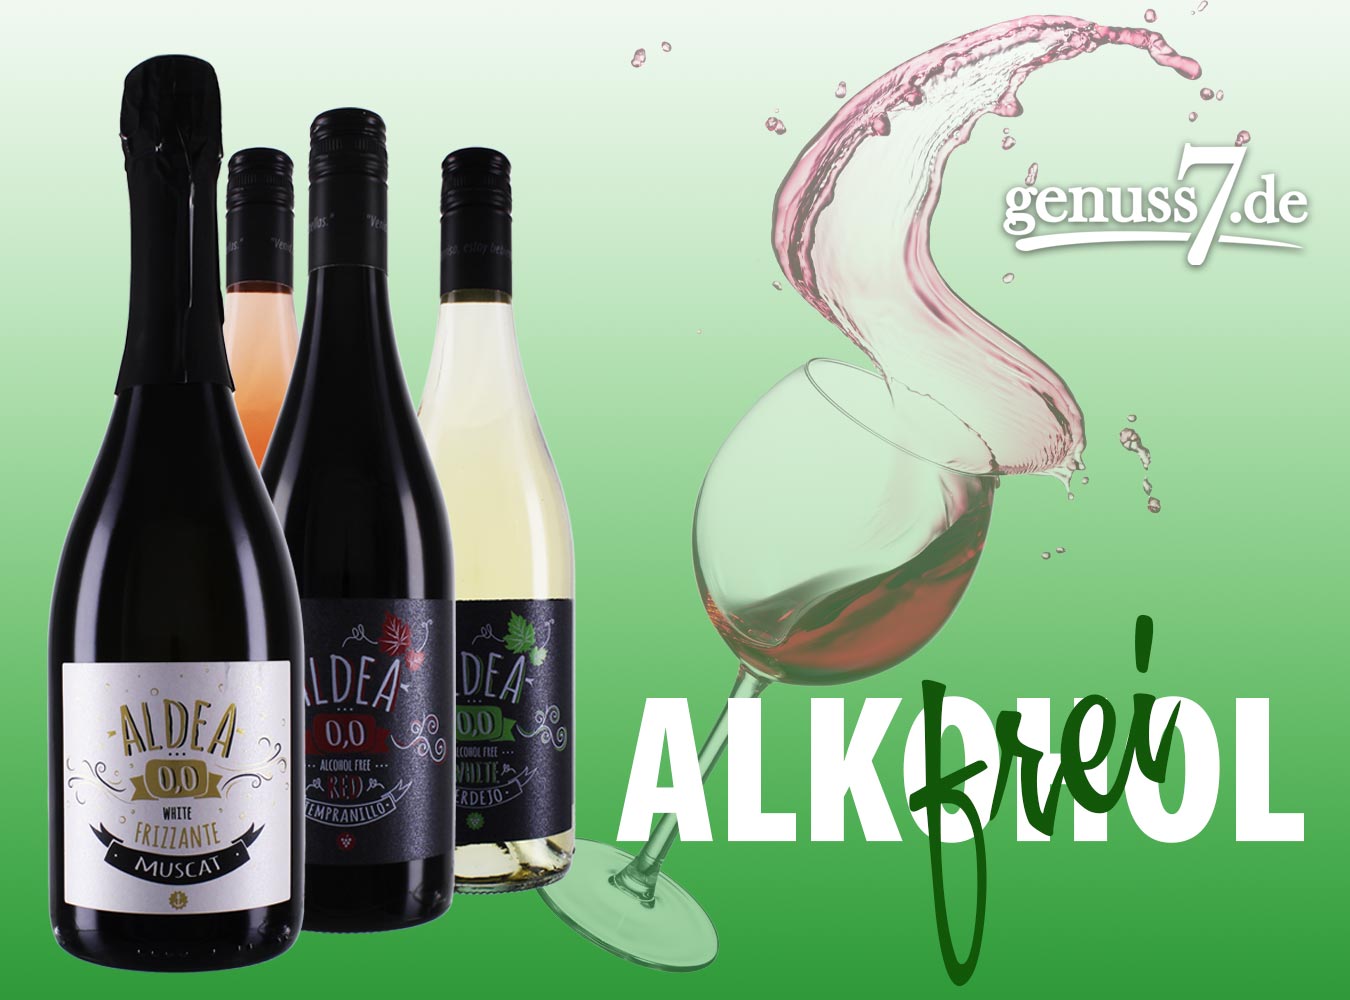 Aldea heißt die Reihe der alkoholfreien Weine aus Spanien